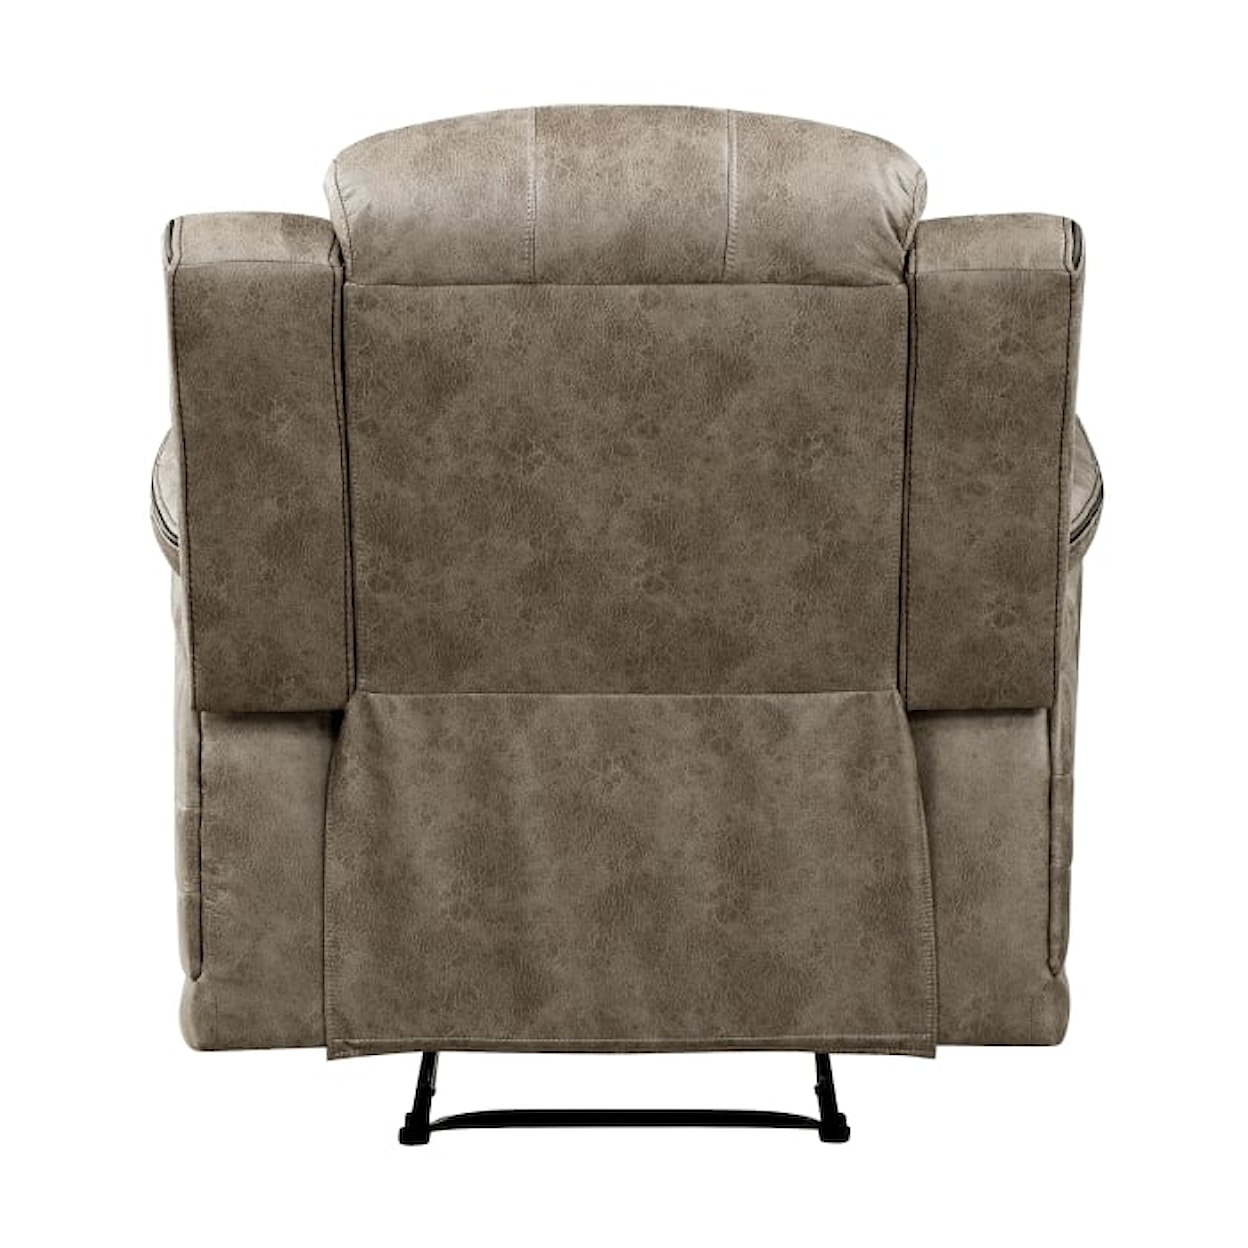 Homelegance Furniture Centeroak Reclining Chair